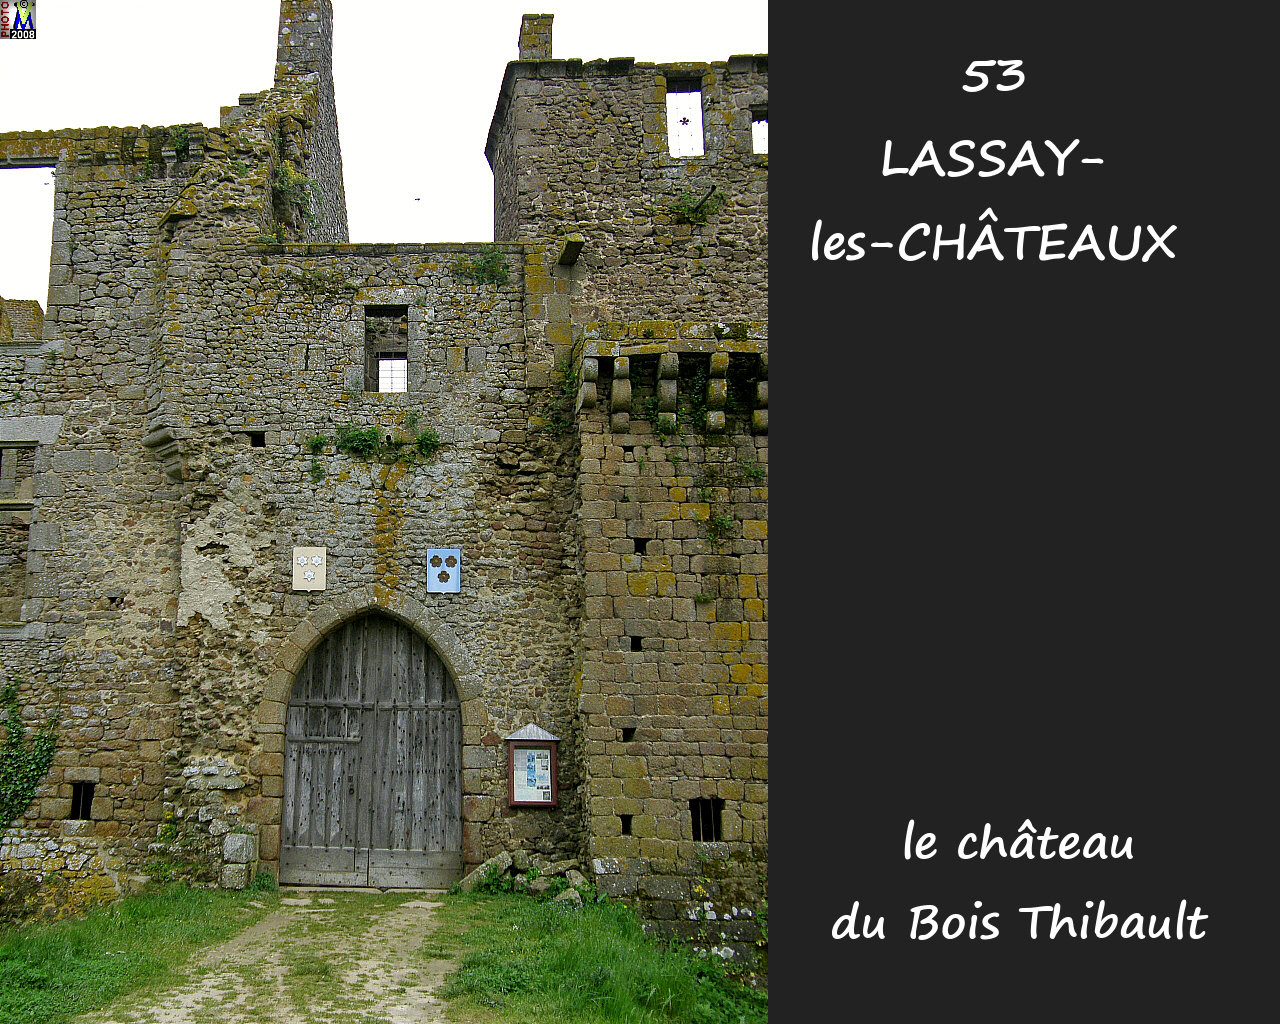 53LASSAY-CHATEAUX_chateauBT_120.jpg